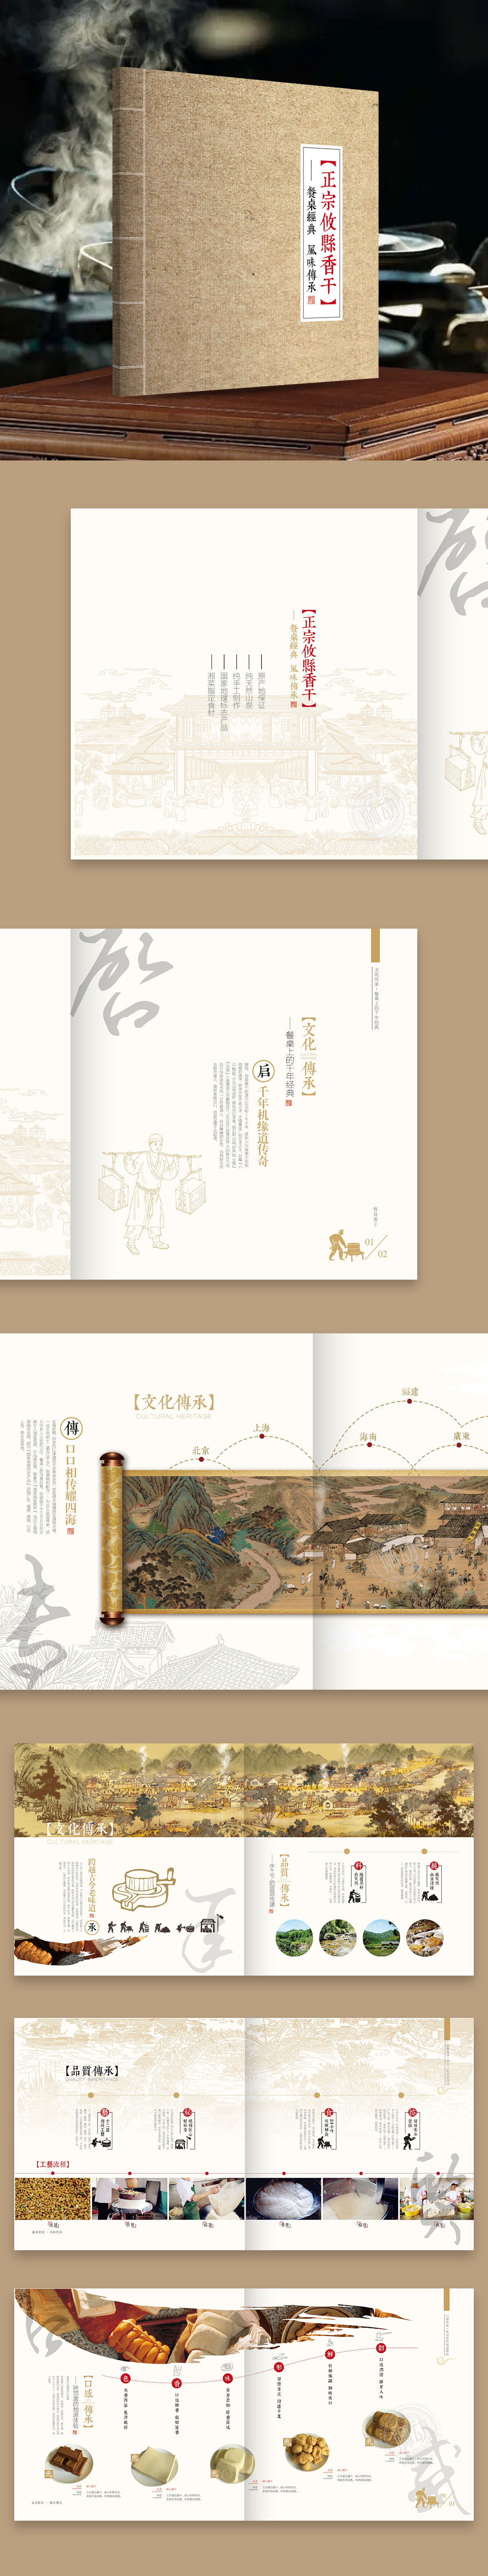 攸县香干非物质文化遗产宣传策划设计画册编排